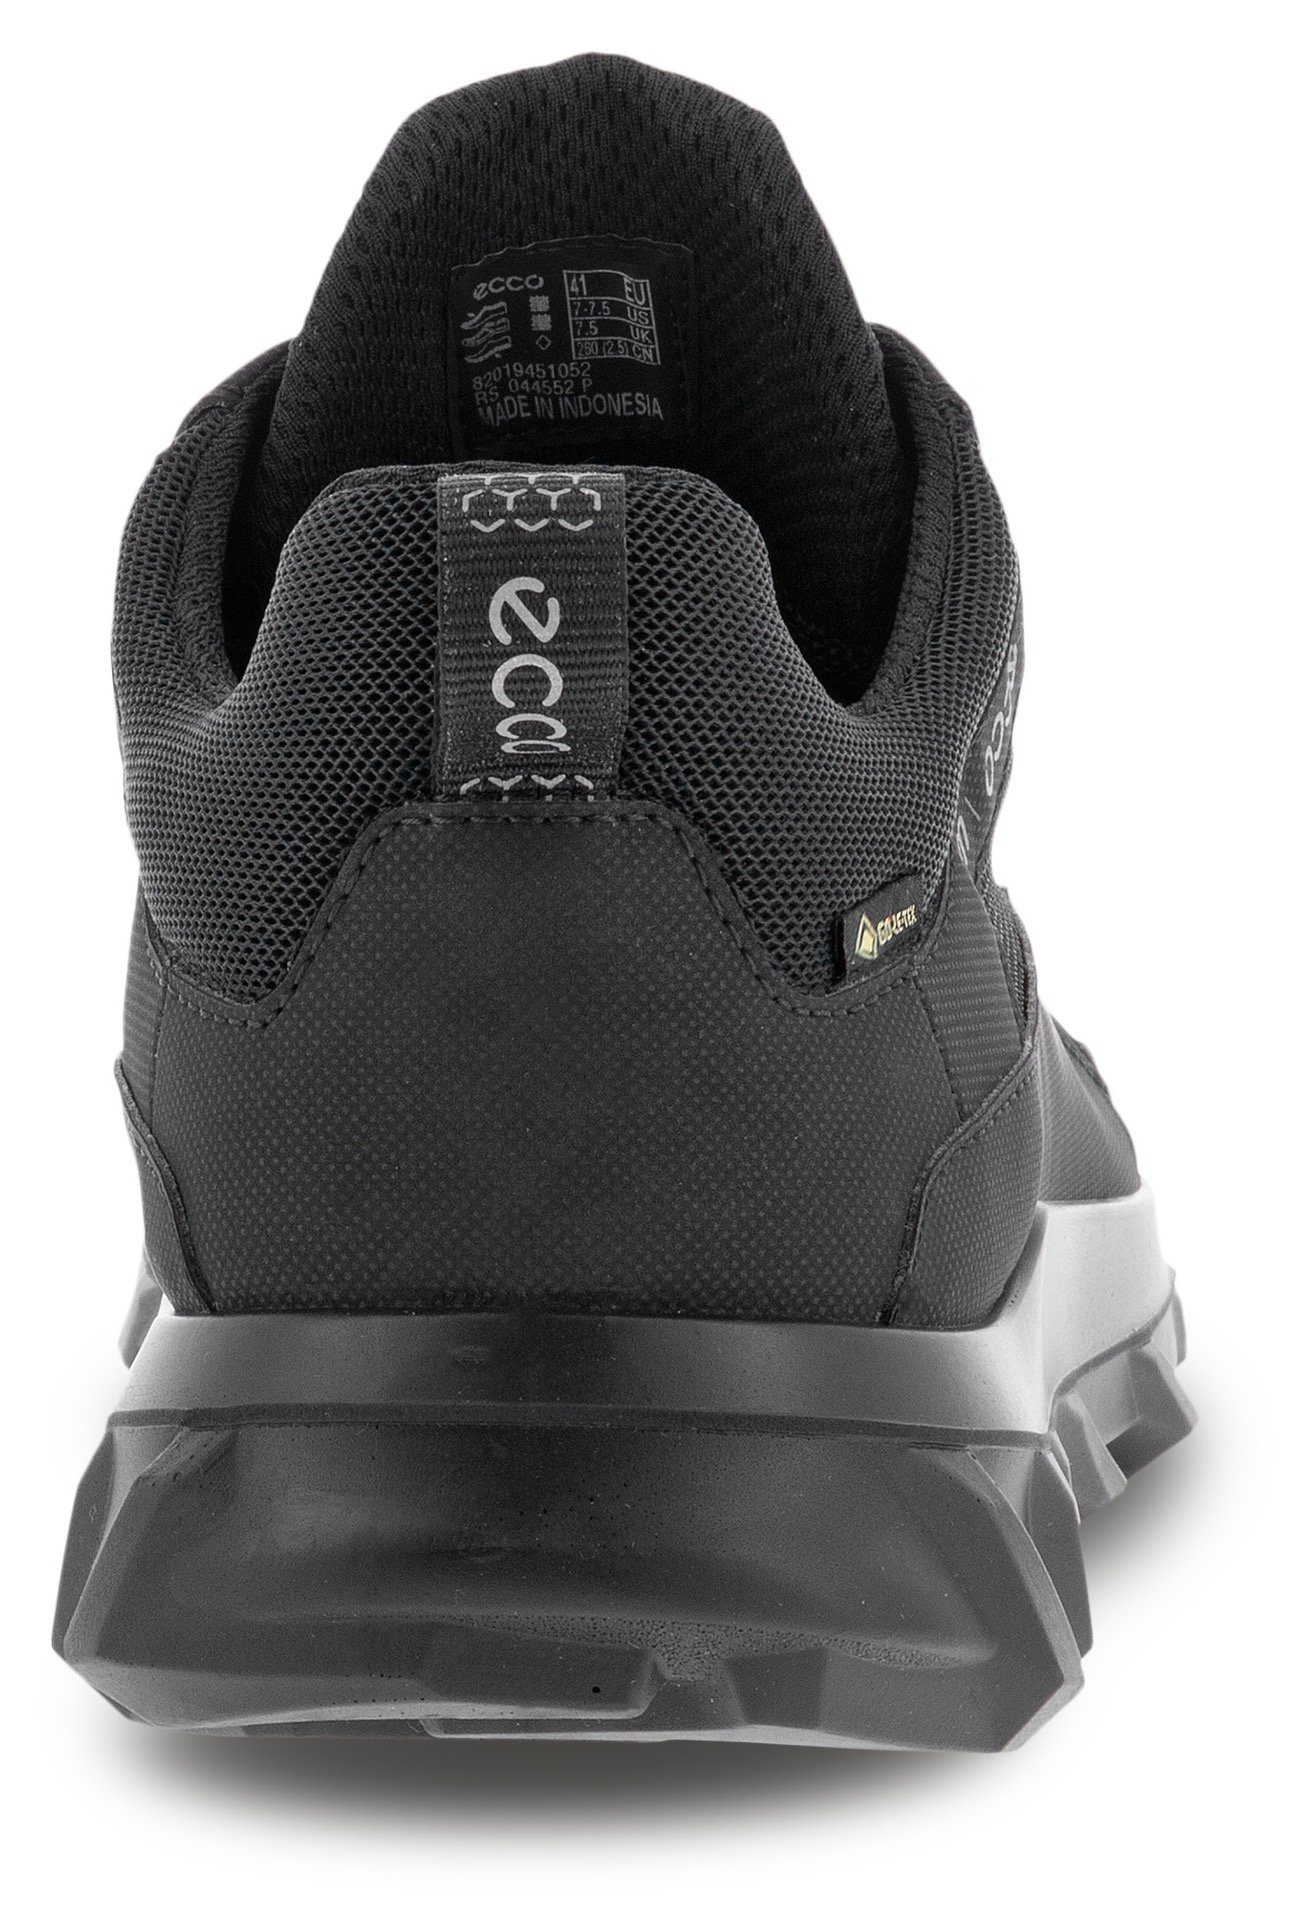 MX black/black Sneaker wasserdichter Ecco Slip-On M Ausstattung GORE-TEX mit